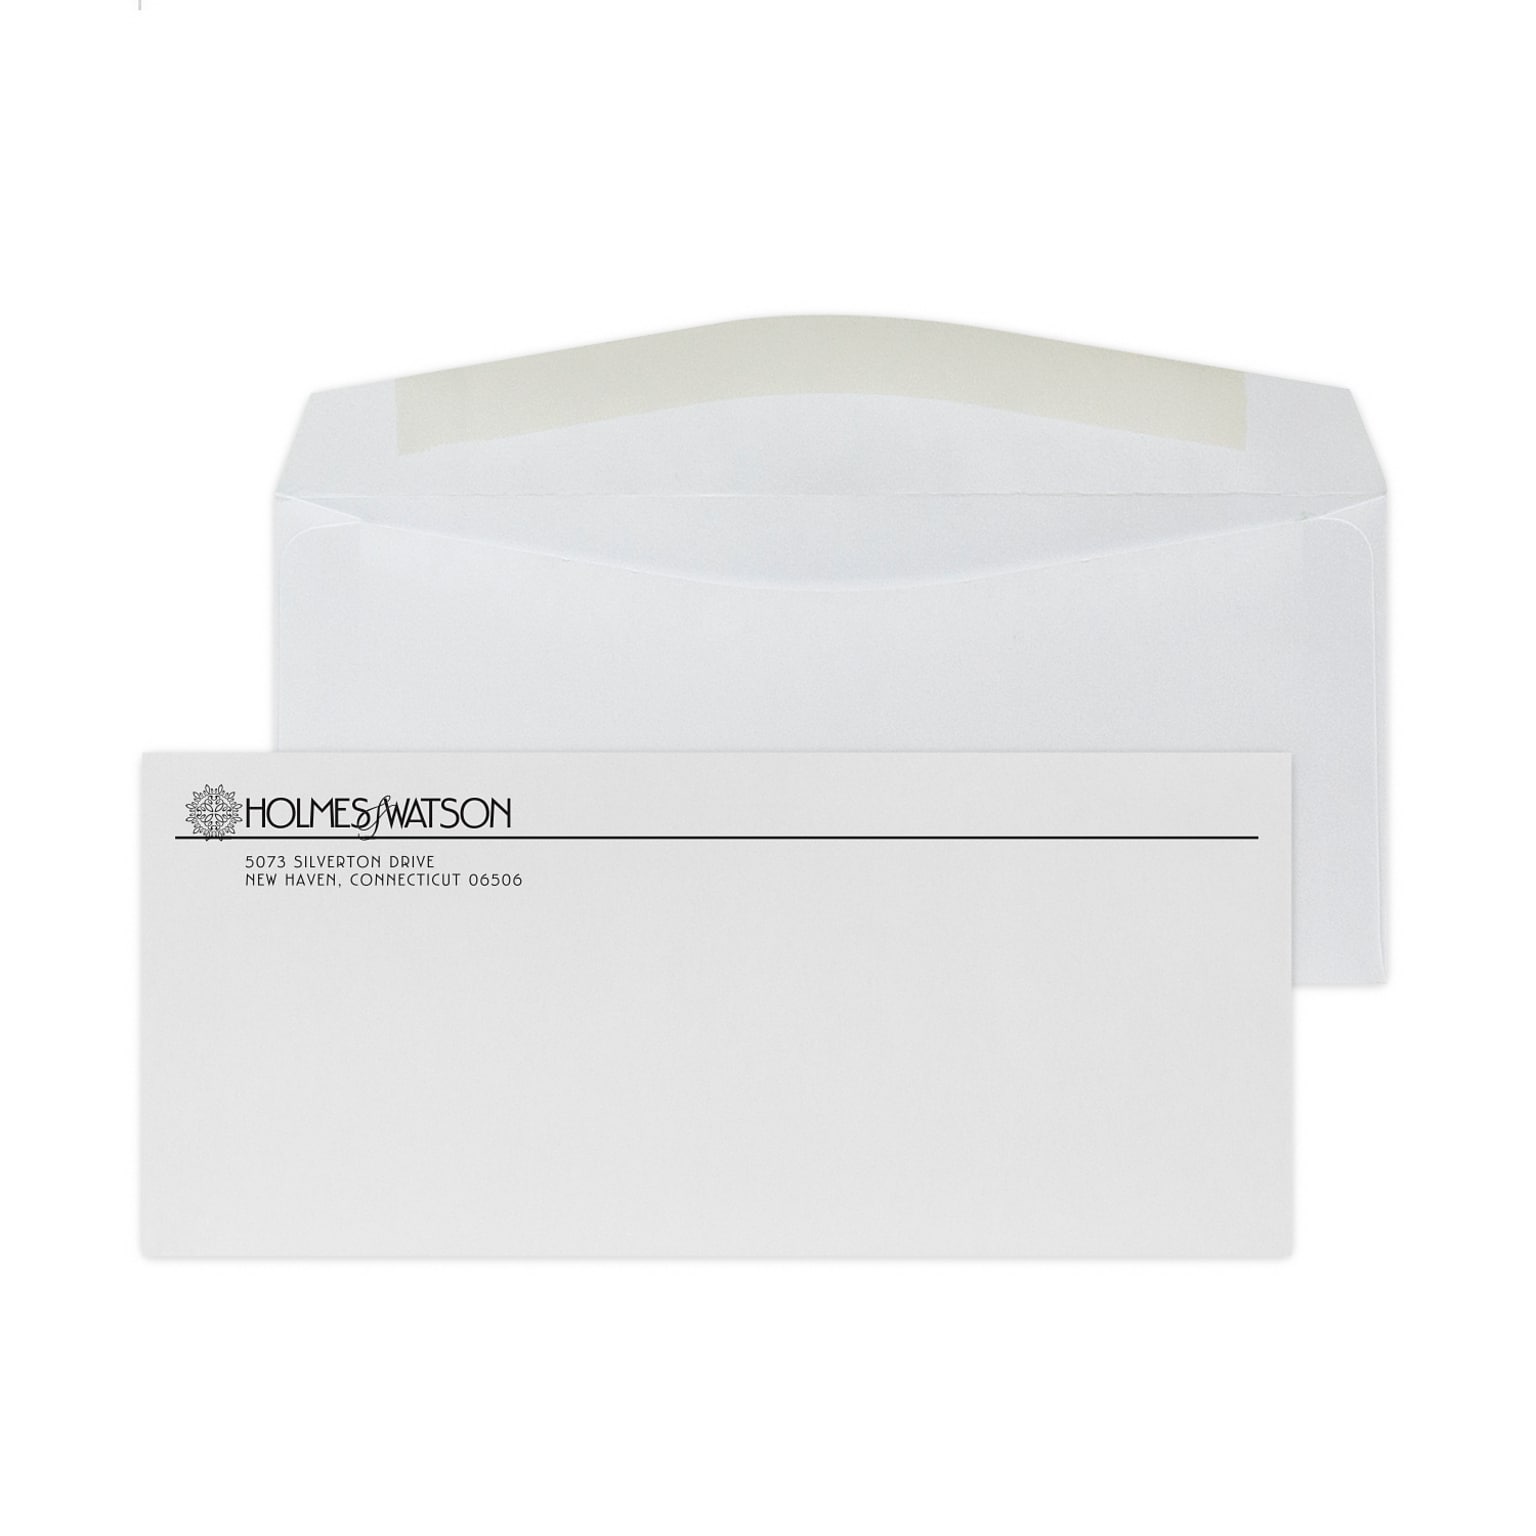 Custom #9 Standard Envelopes, 3 7/8 x 8 7/8, 24# White Wove, 1 Standard Ink, 250 / Pack